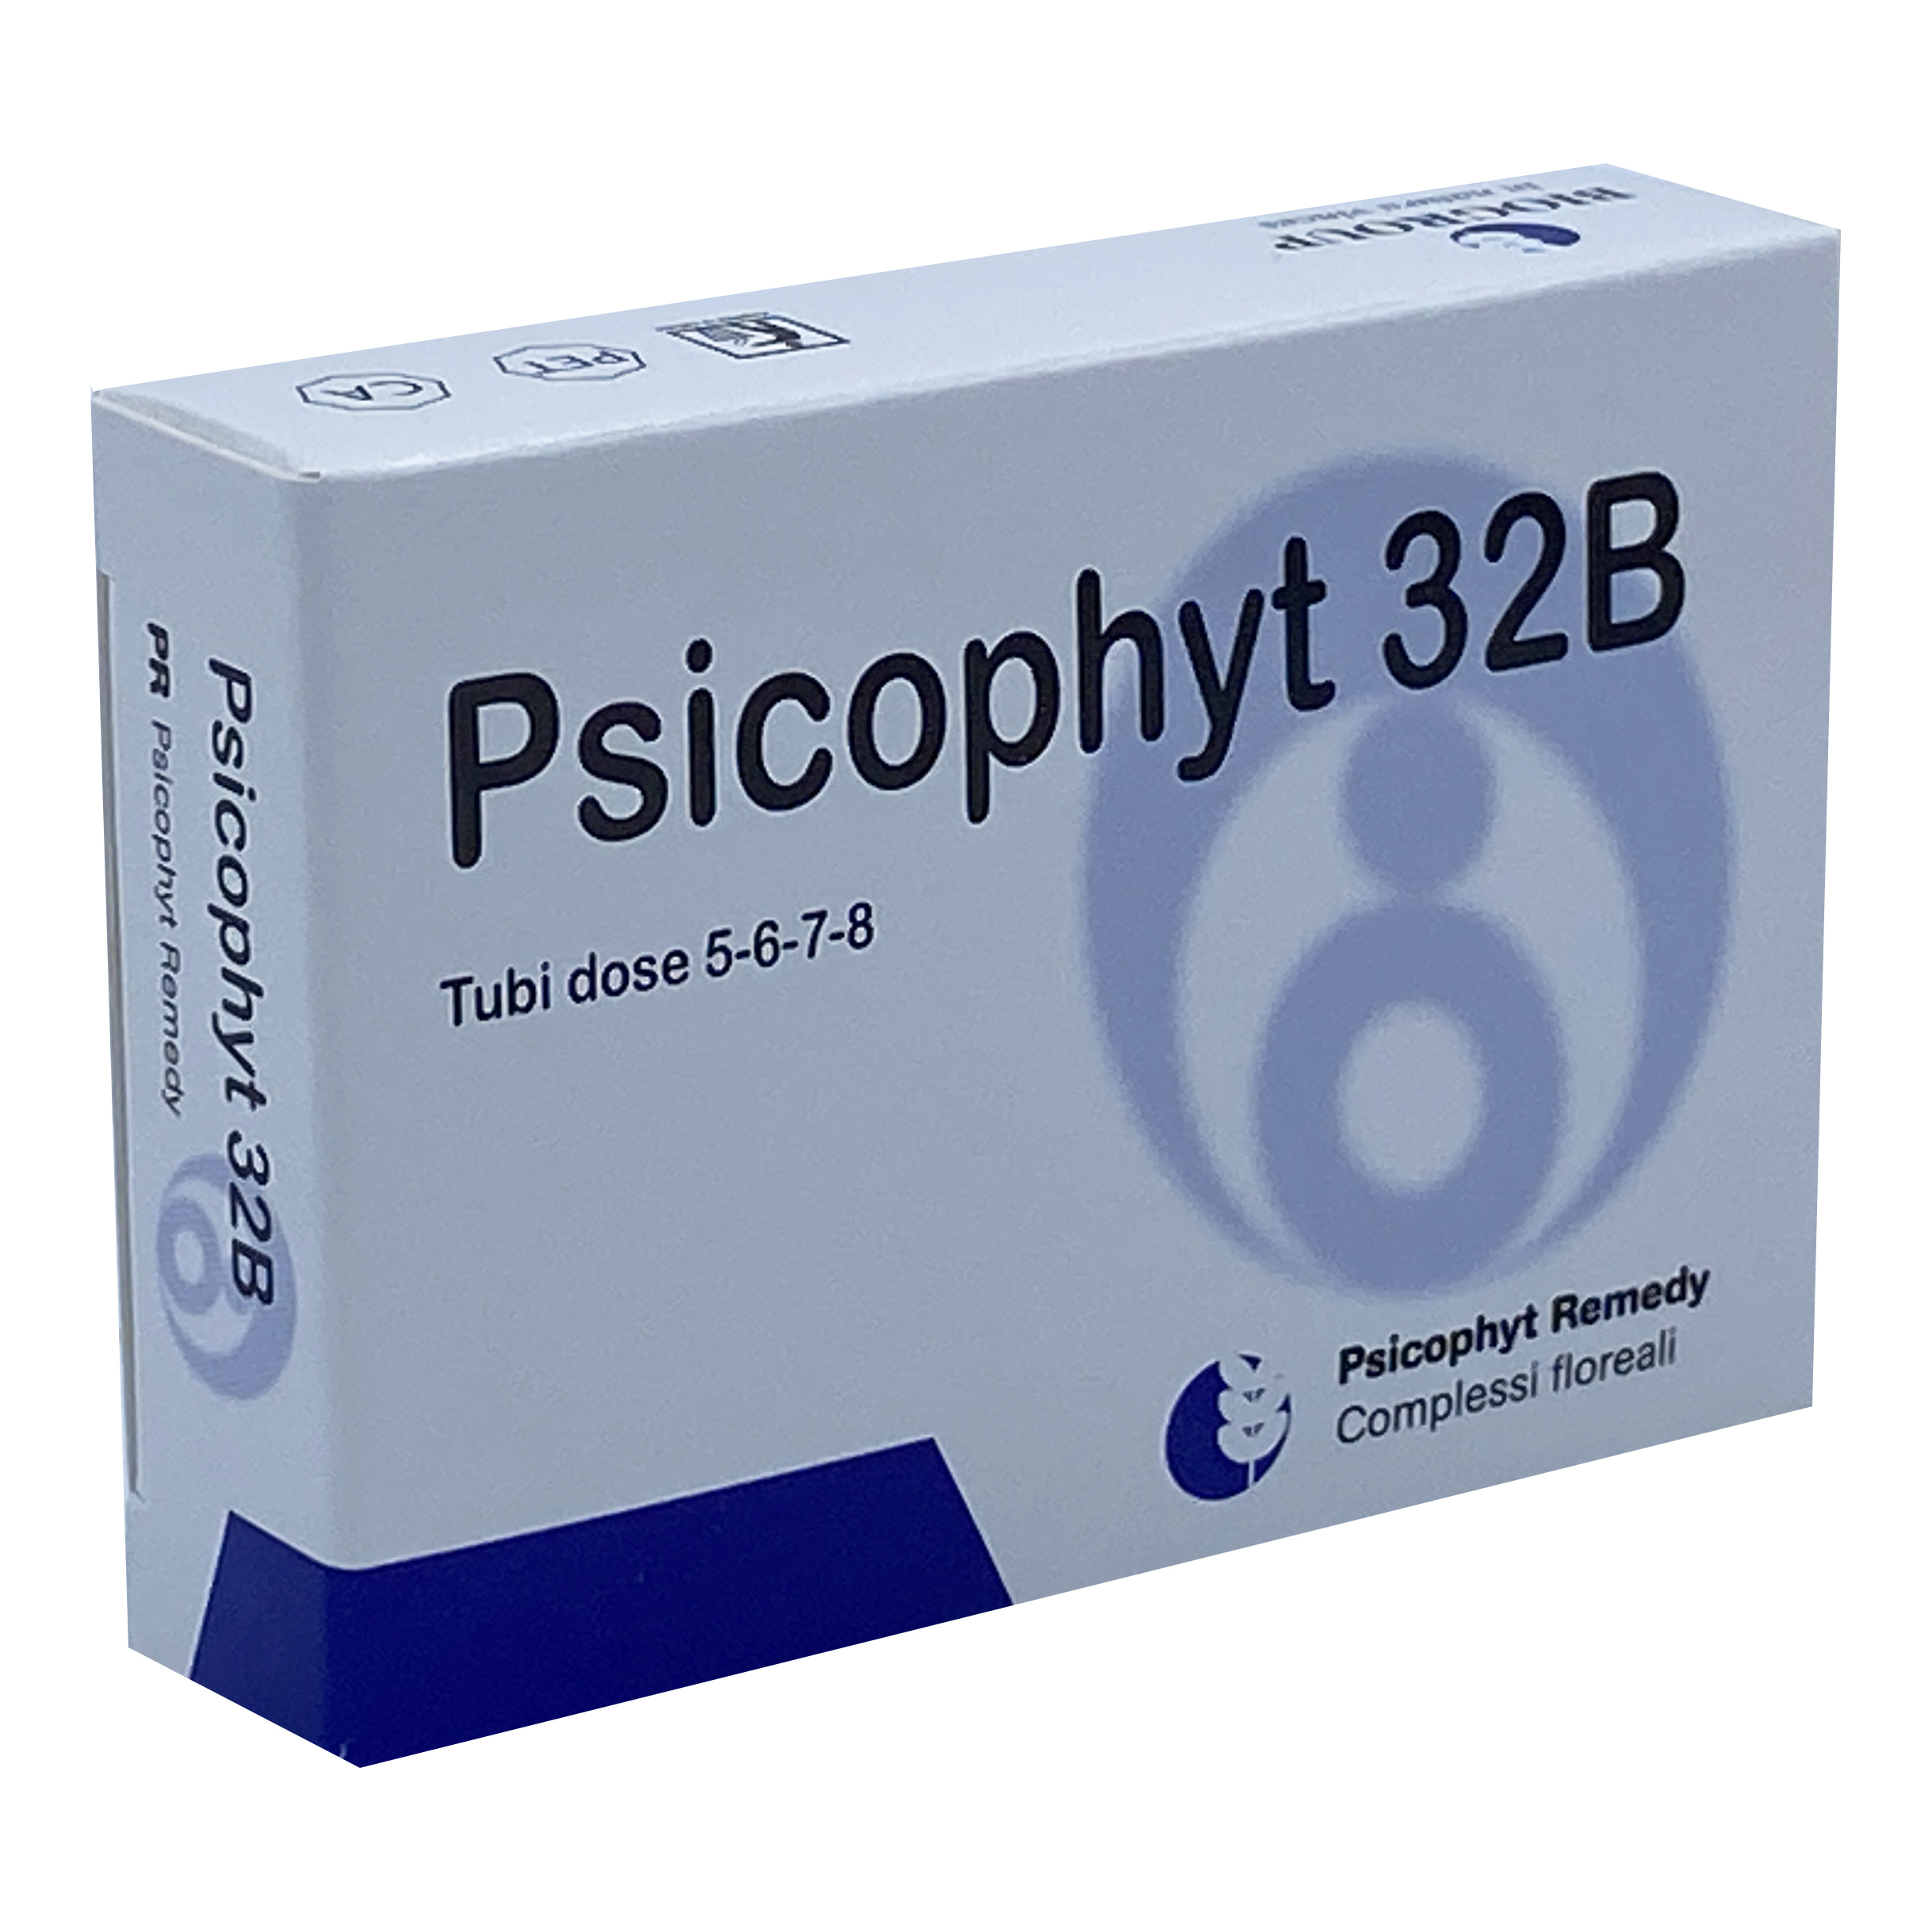 PSICOPHYT REMEDY 32B 4TUB 1,2G